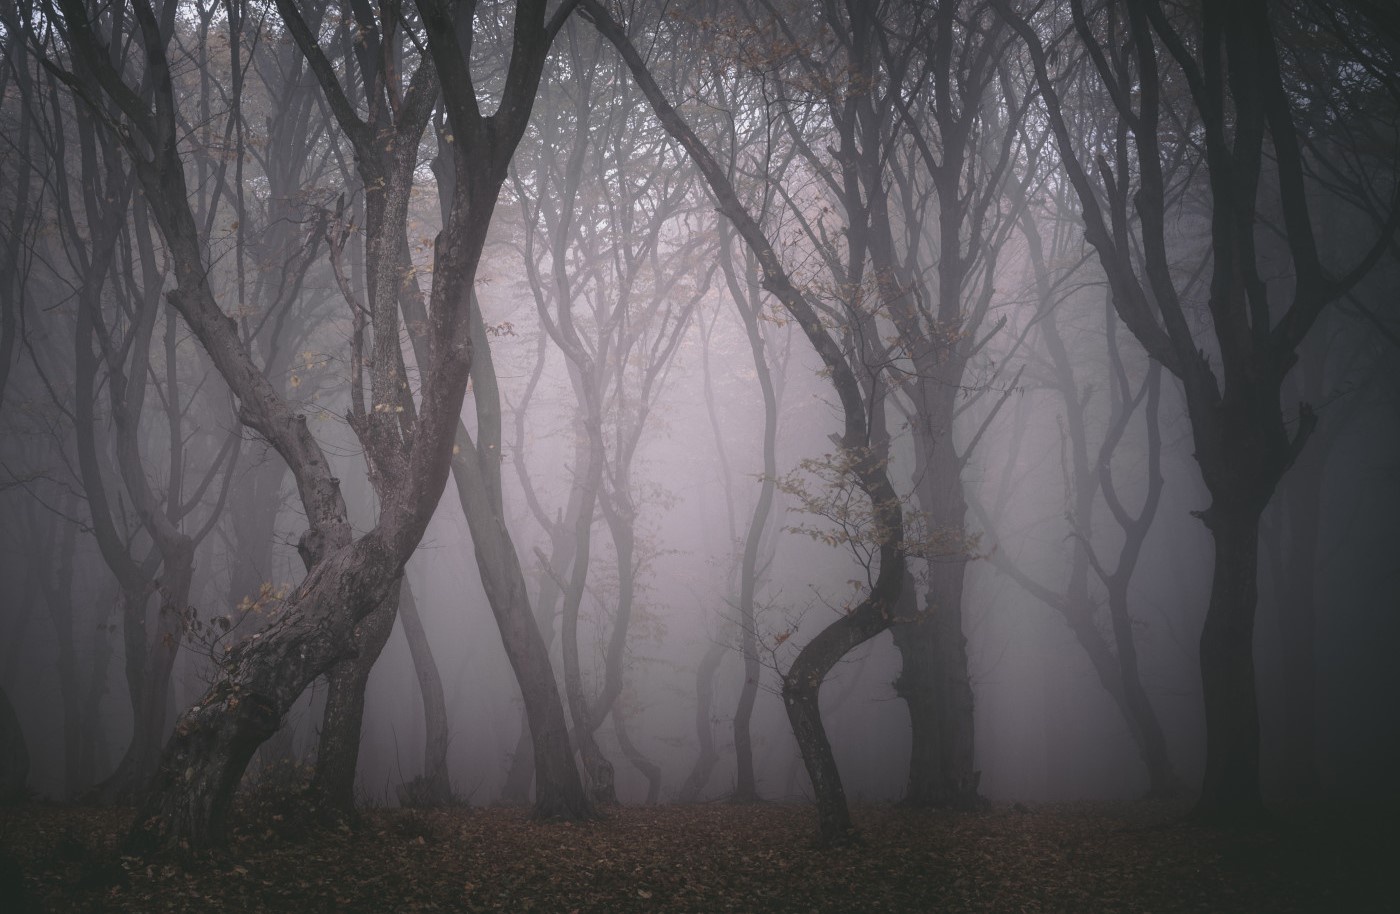 Những hiện tượng siêu nhiên trong khu rừng “Tam giác quỷ” nổi tiếng ở châu Âu - 1